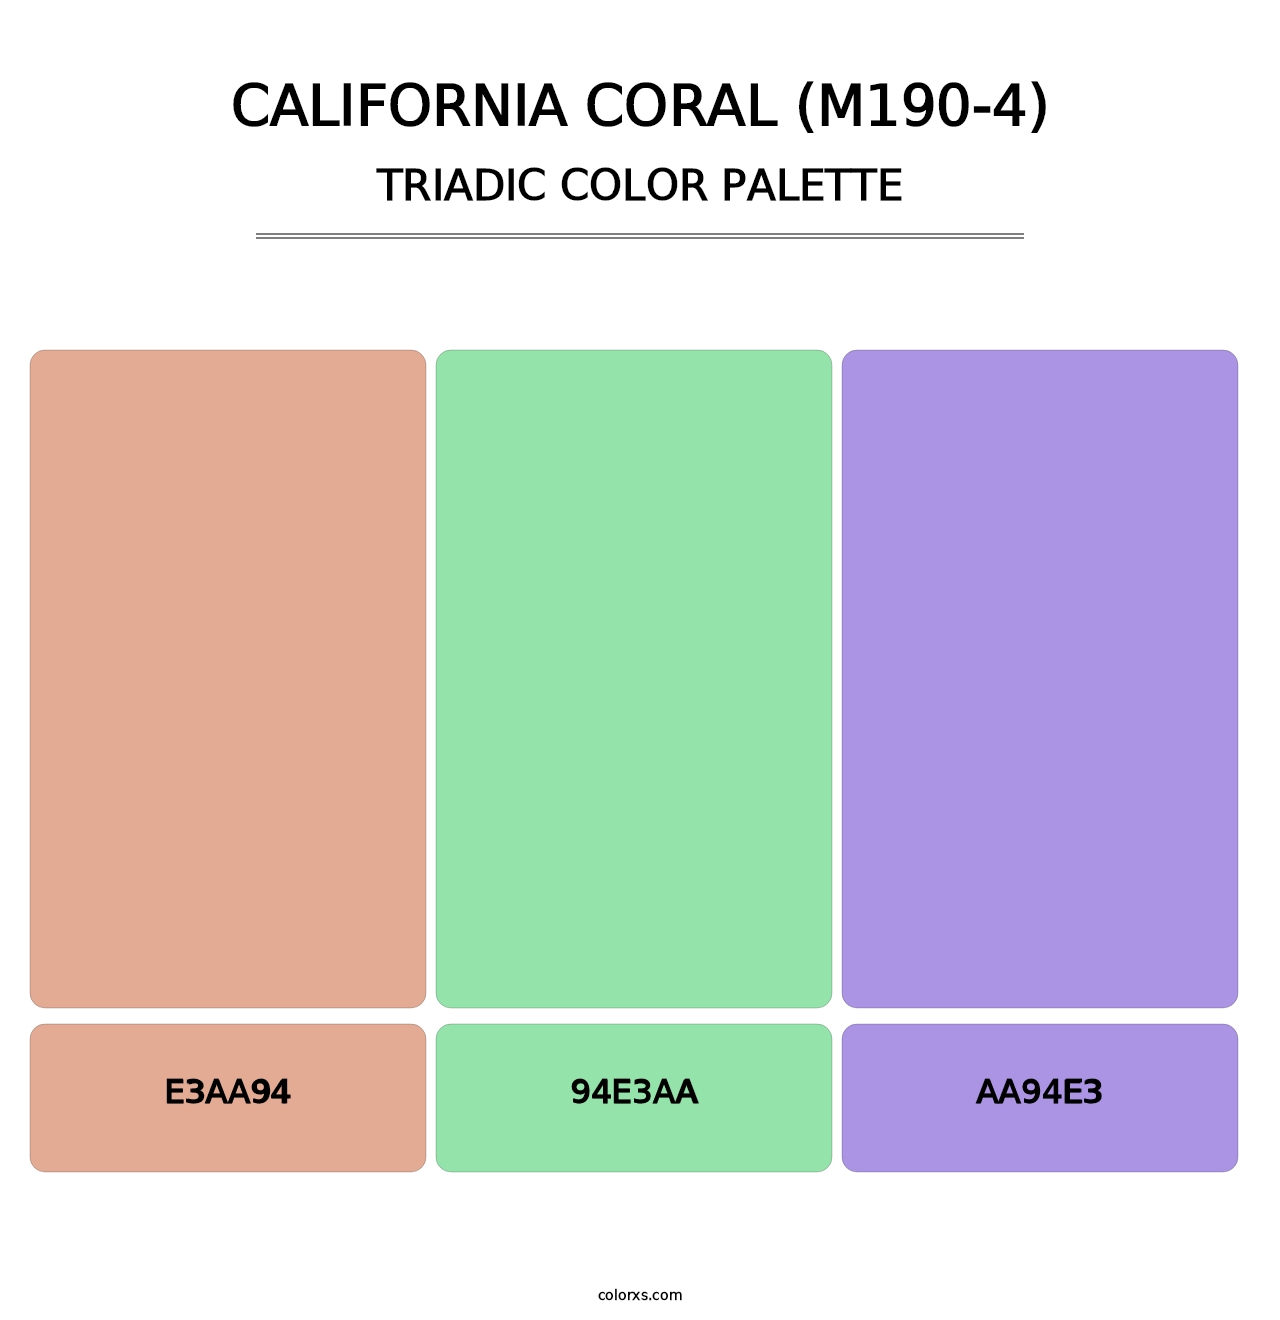 California Coral (M190-4) - Triadic Color Palette